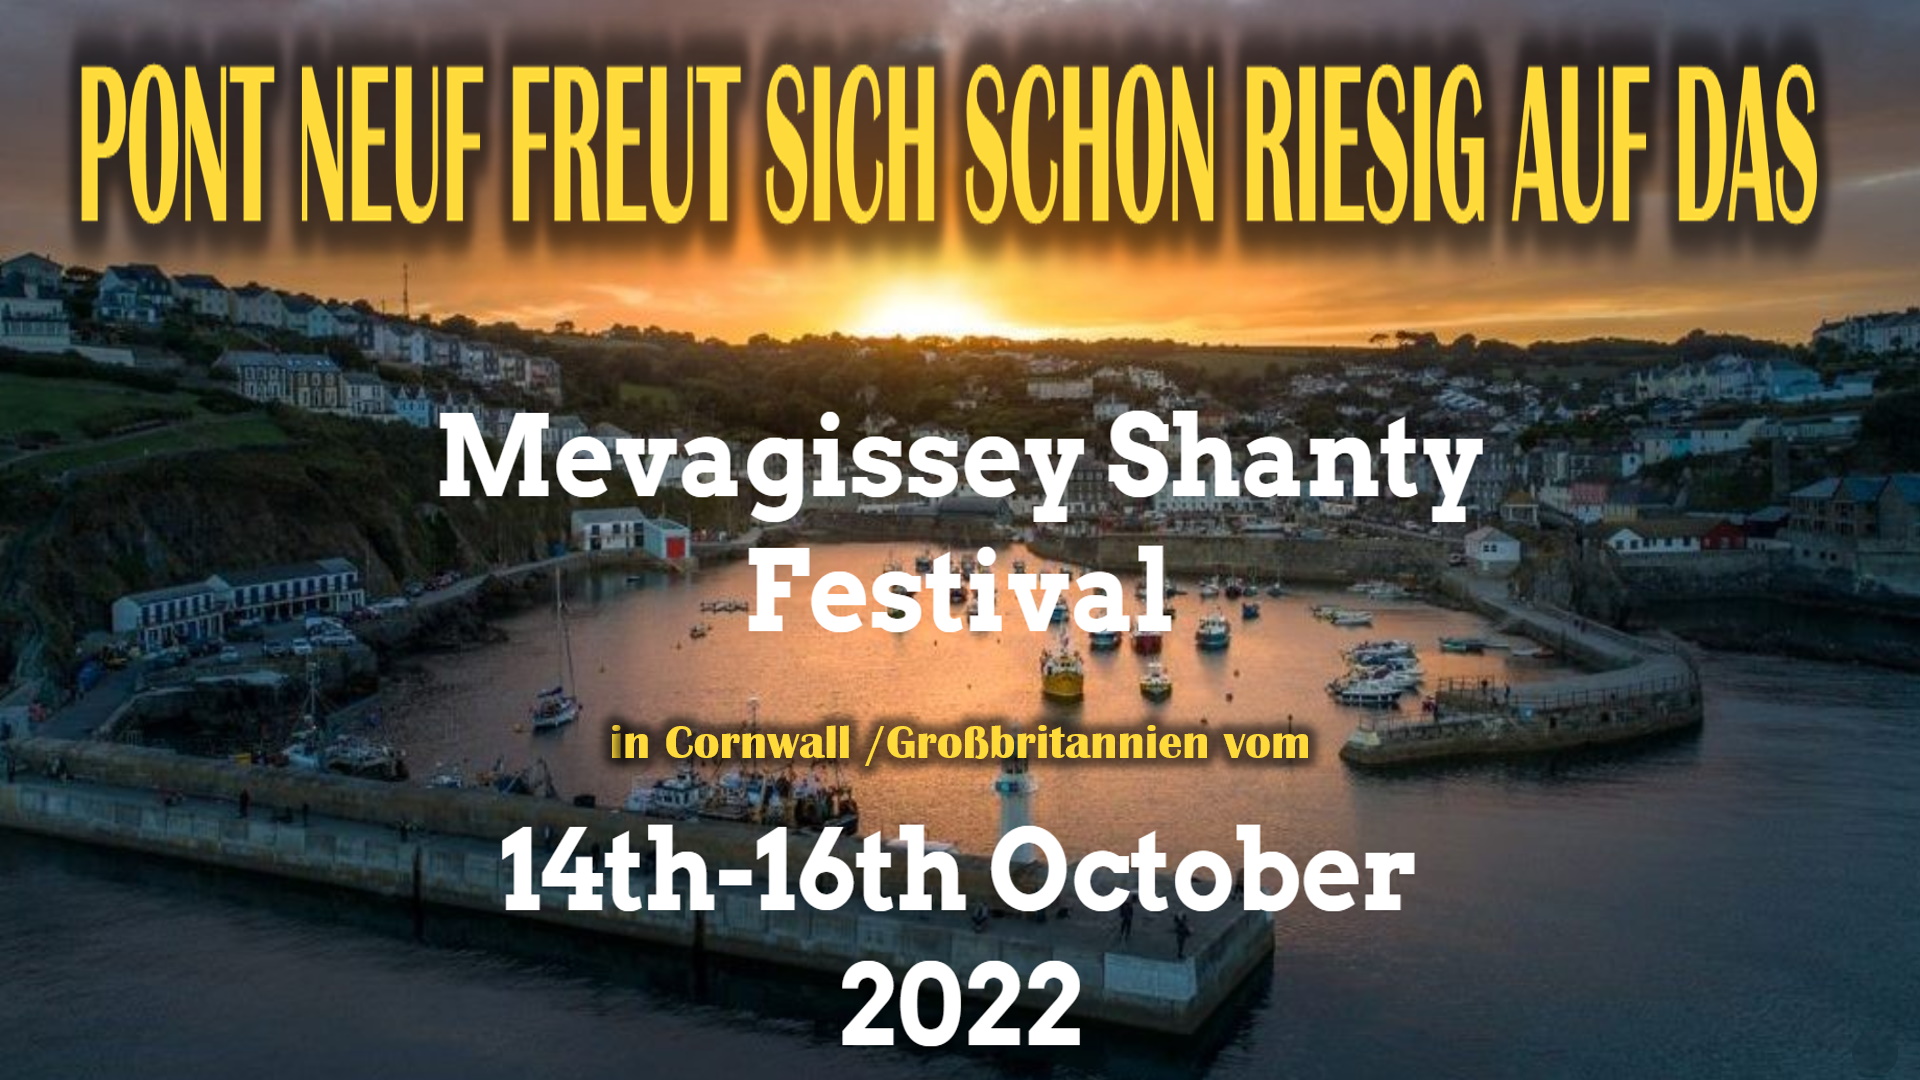 Pont Neuf freut sich schon riesig auf das Mevagissey Shanty Festival in Cornwall vom 14. bis 16. Oktober 2022